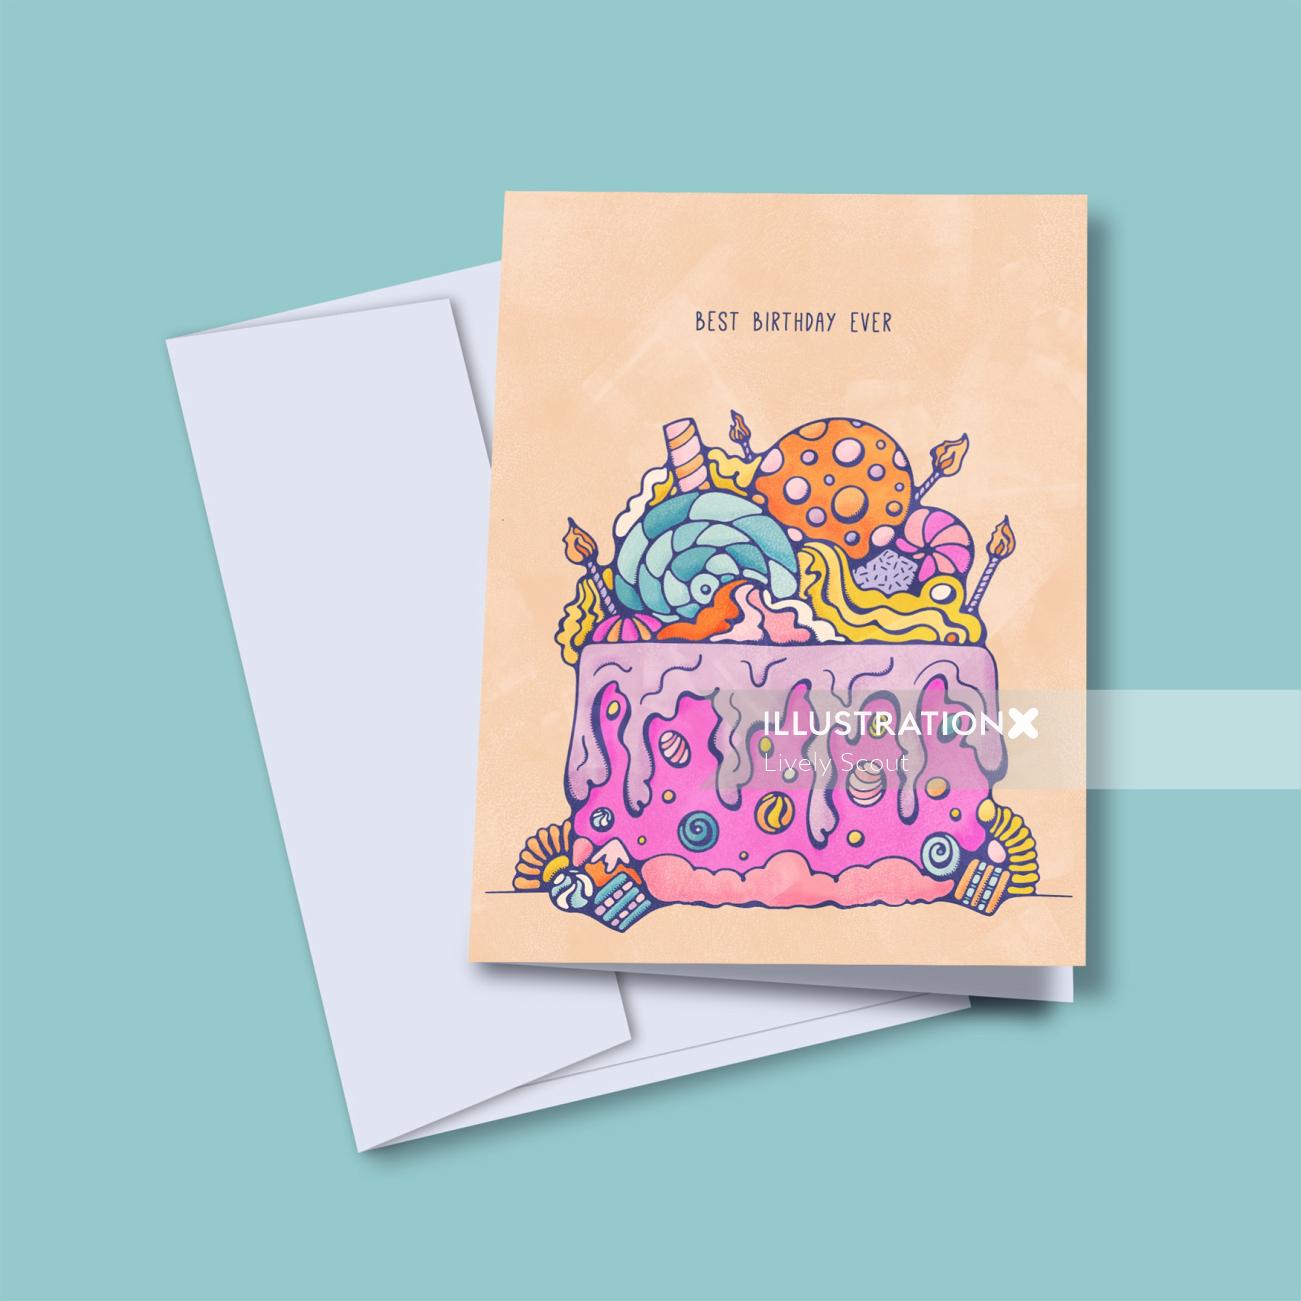 Pastel de cumpleaños colorido cubierto de dulces en la tarjeta de felicitación